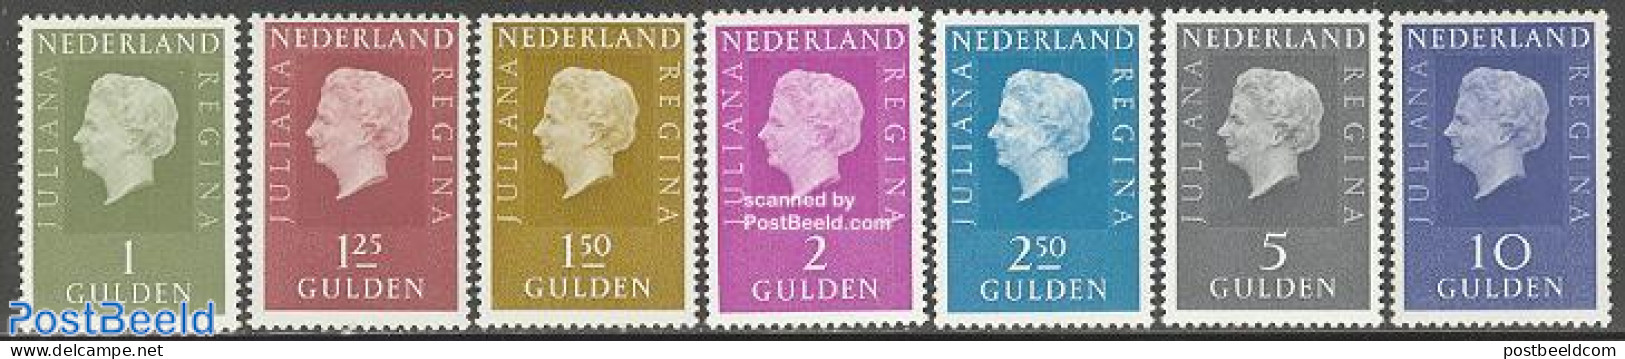 Netherlands 1969 Definitives 7v, Normal Paper, Unused (hinged) - Unused Stamps